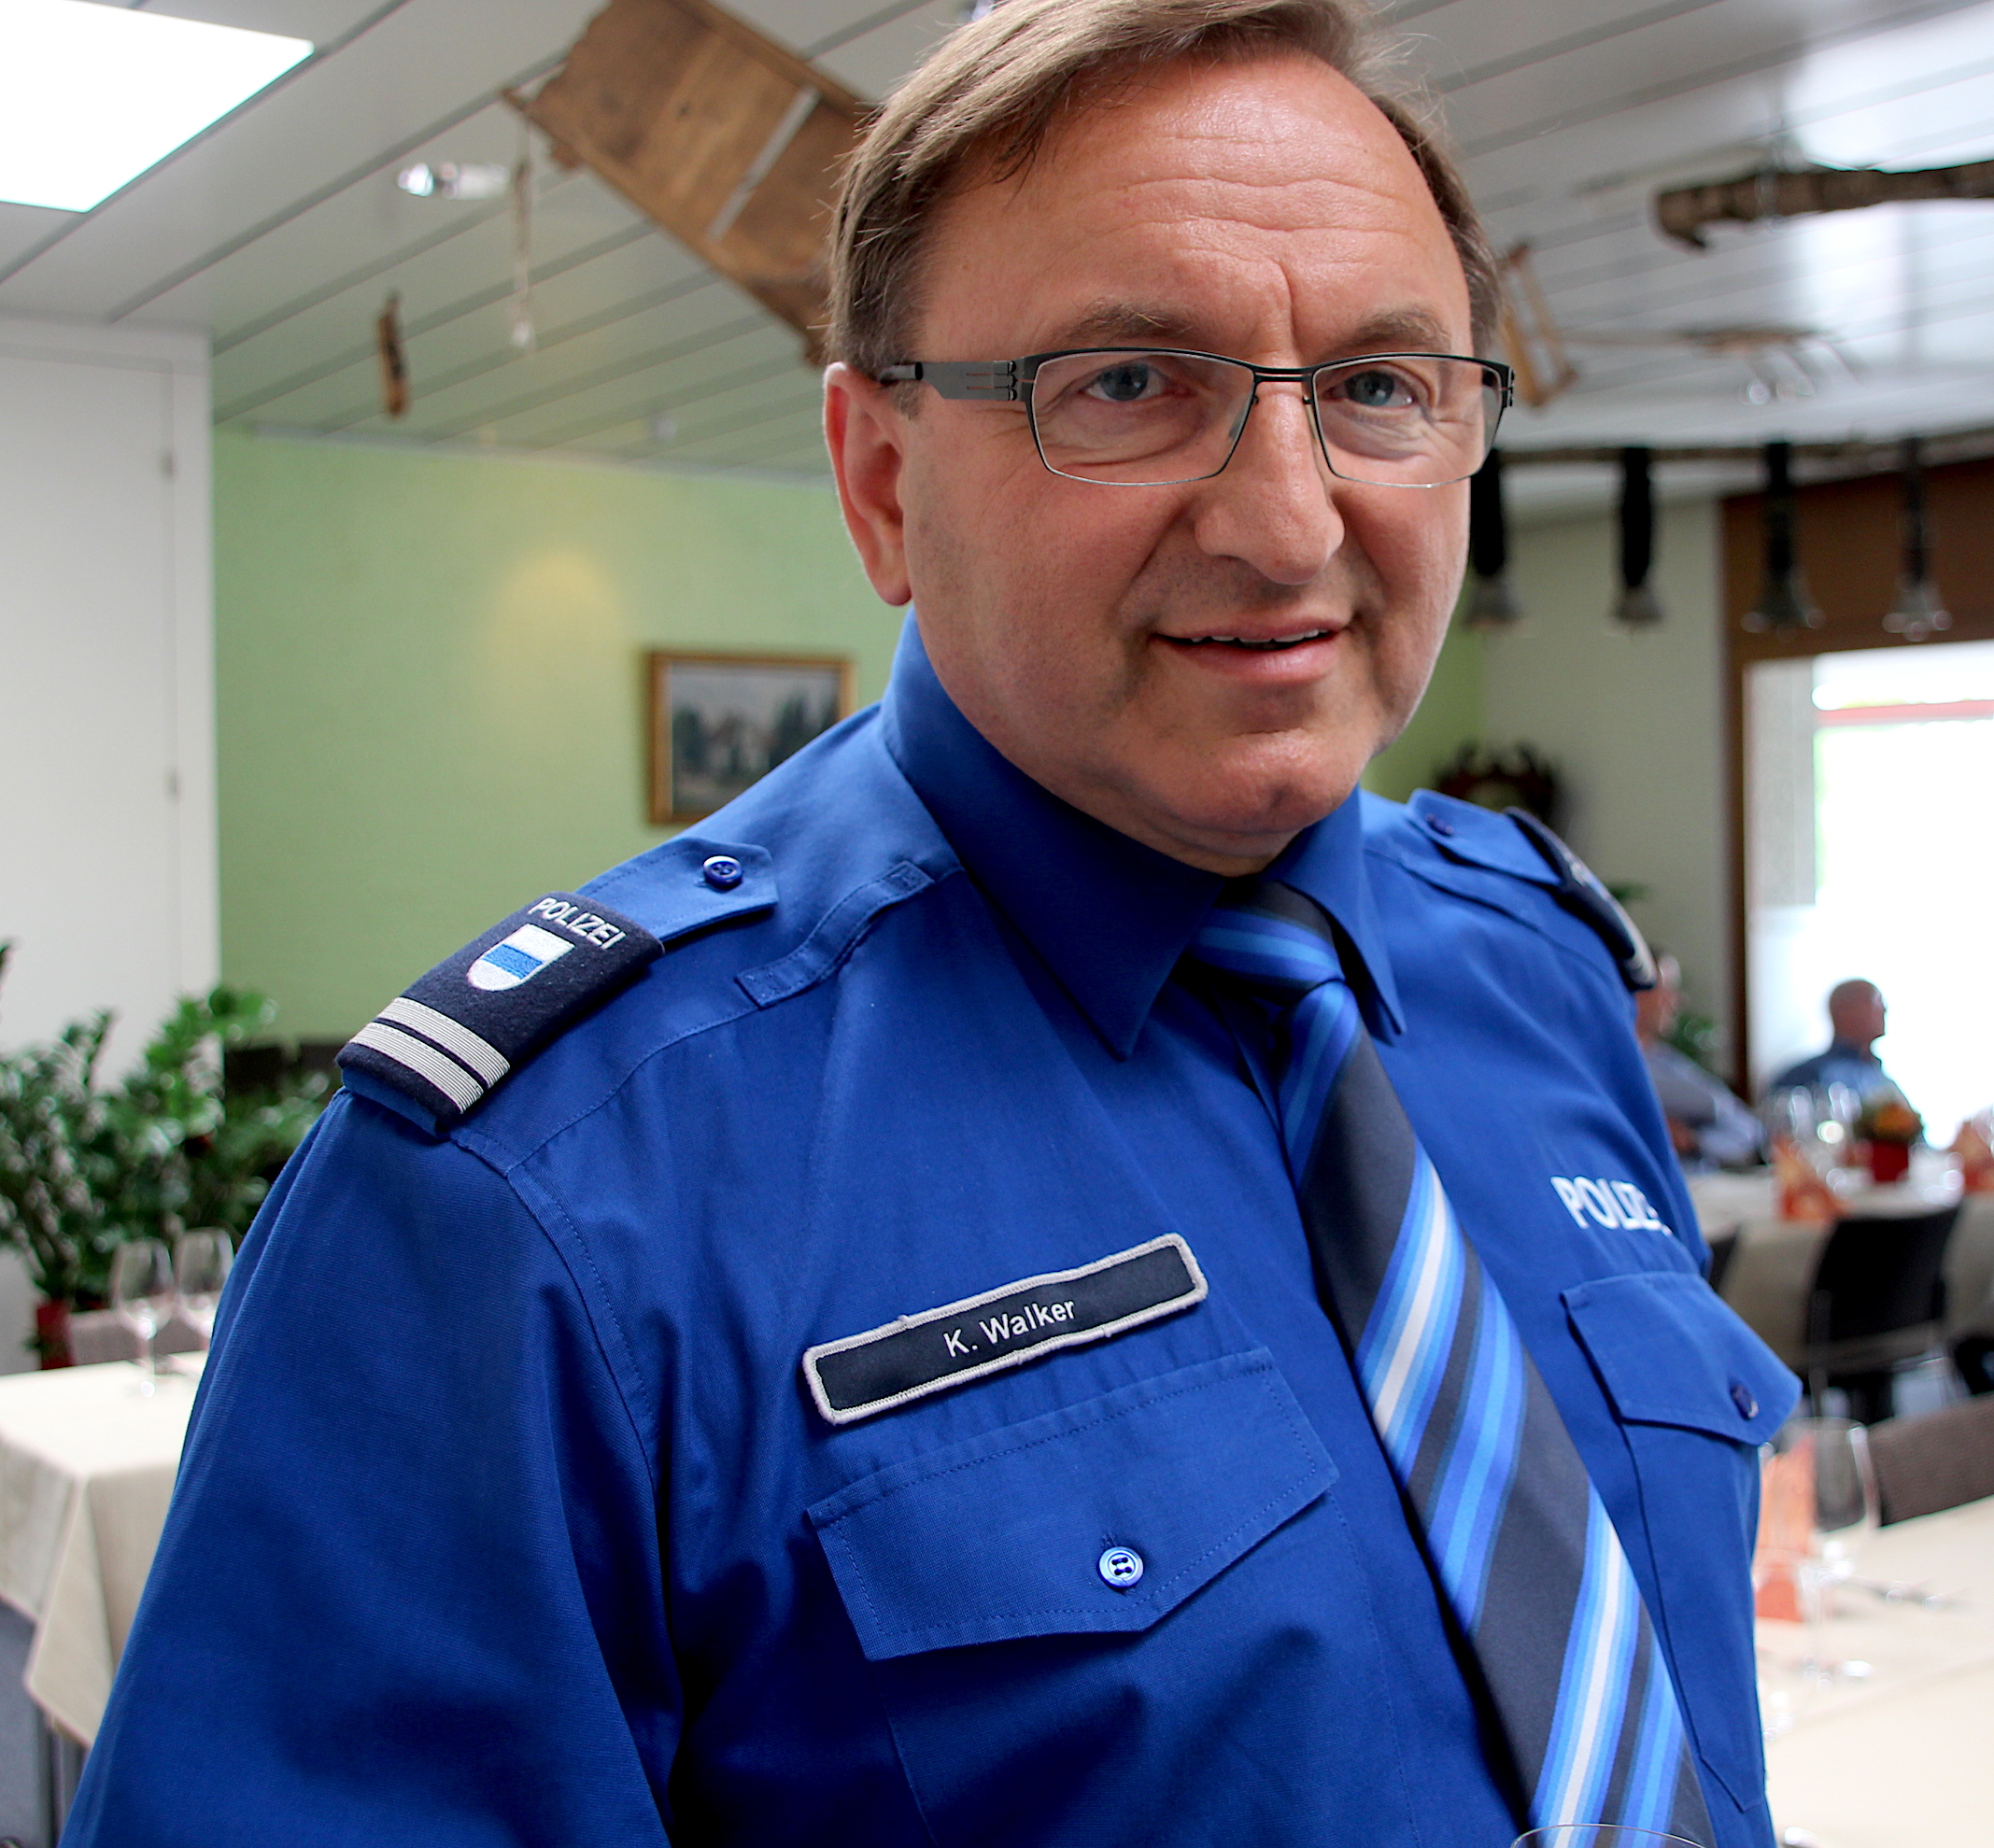 Polizeikommandant Karl Walker von der Zuger Polizei: «Nicht wegschauen, aber auch nicht den Helden spielen.»